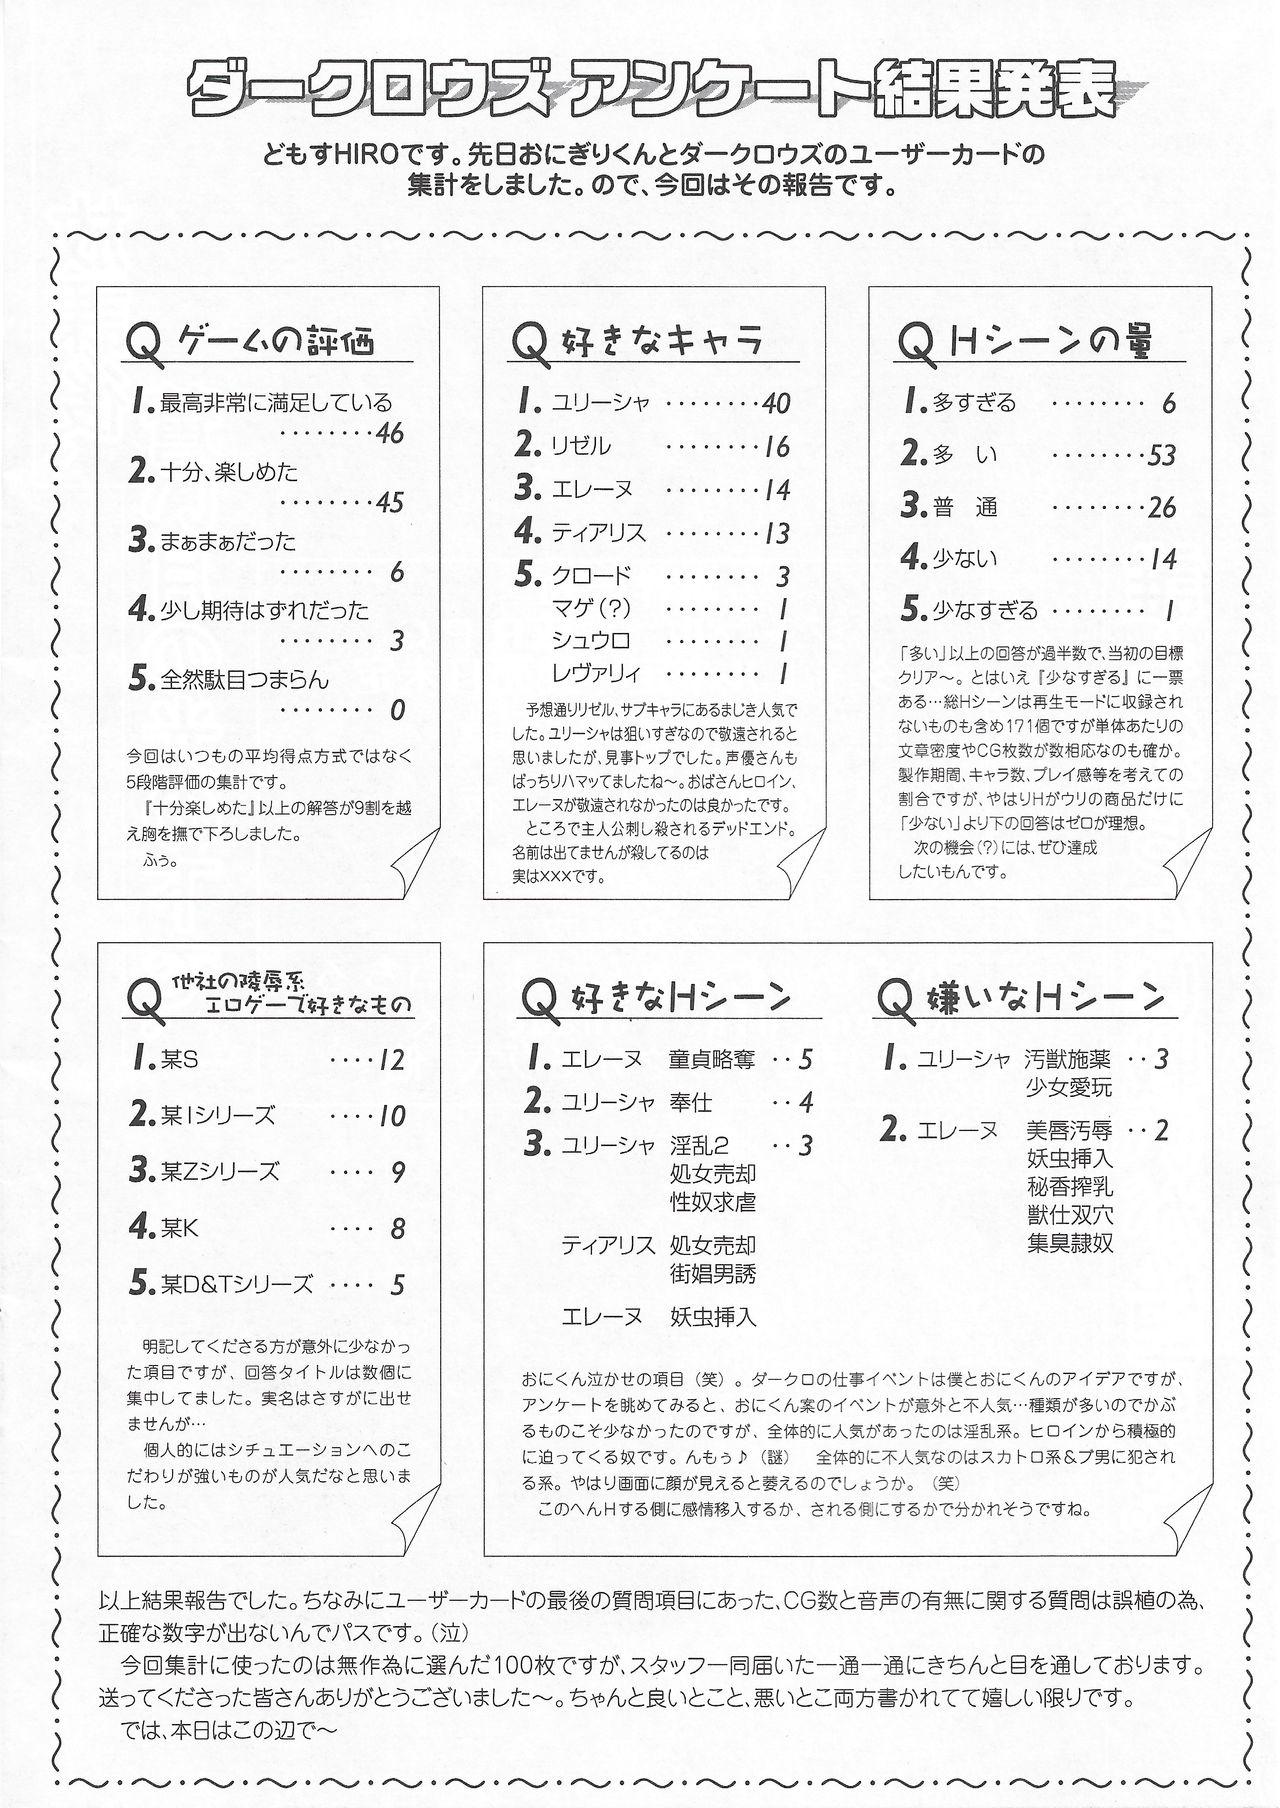 Hole Arisu no Denchi Bakudan Vol. 11 Gorda - Page 9